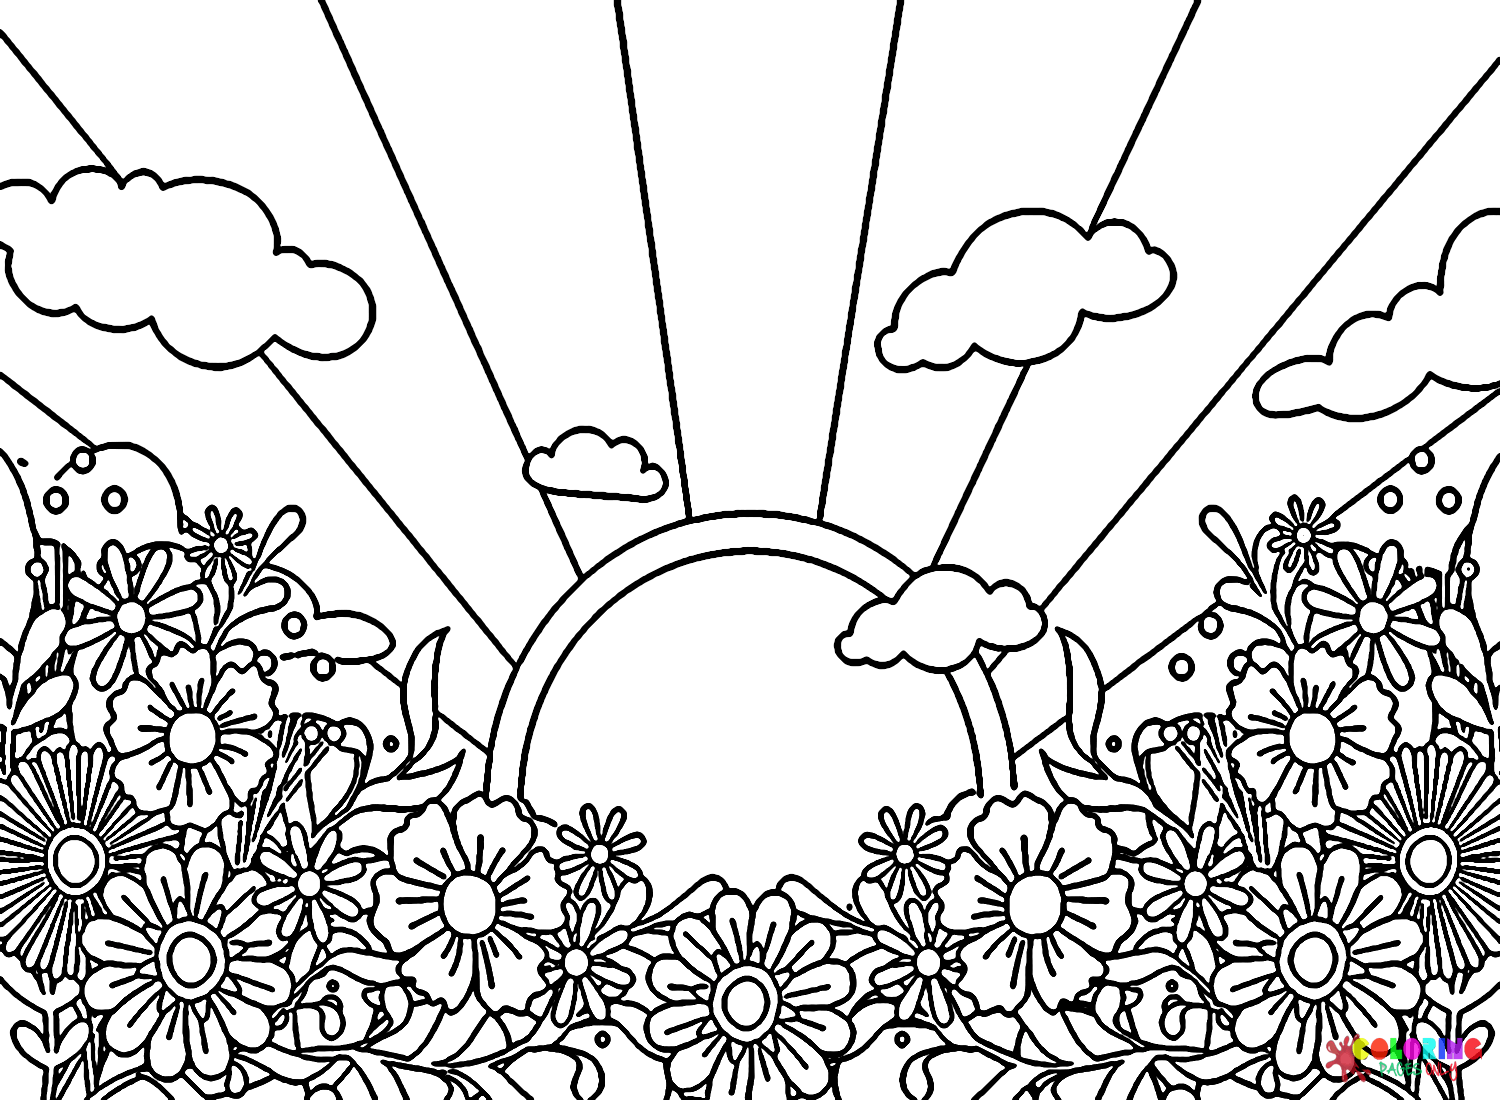 Hippie-Sonne mit Blumen von Hippie